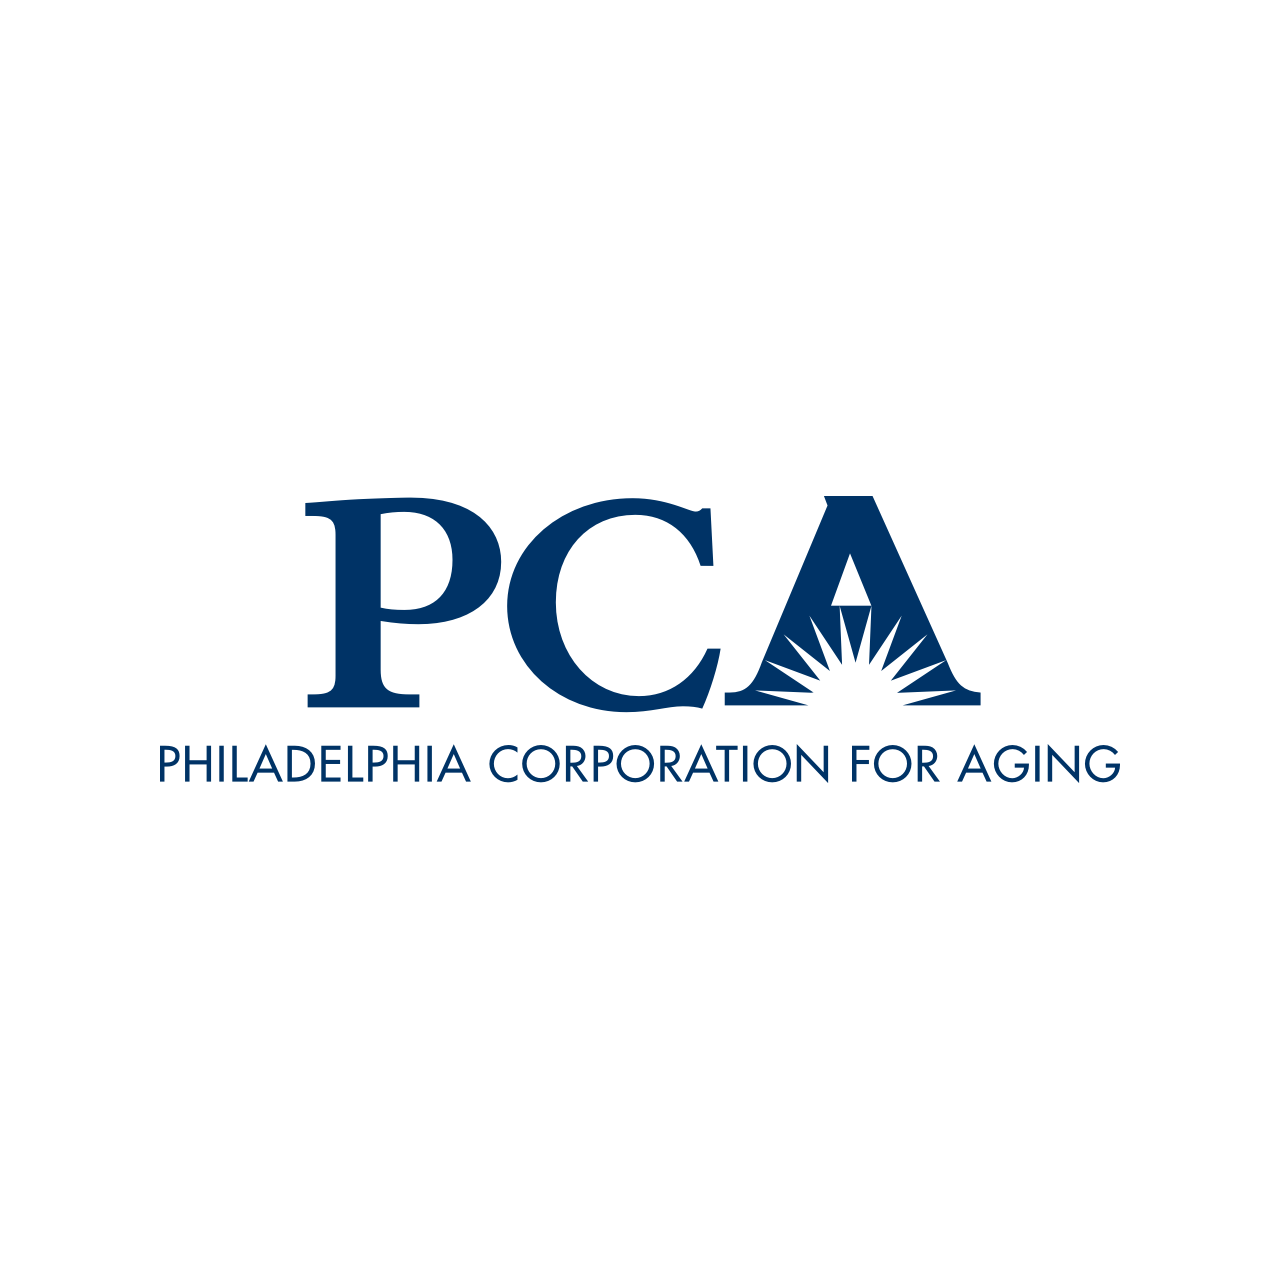 Philadelphia Corporation for Aging